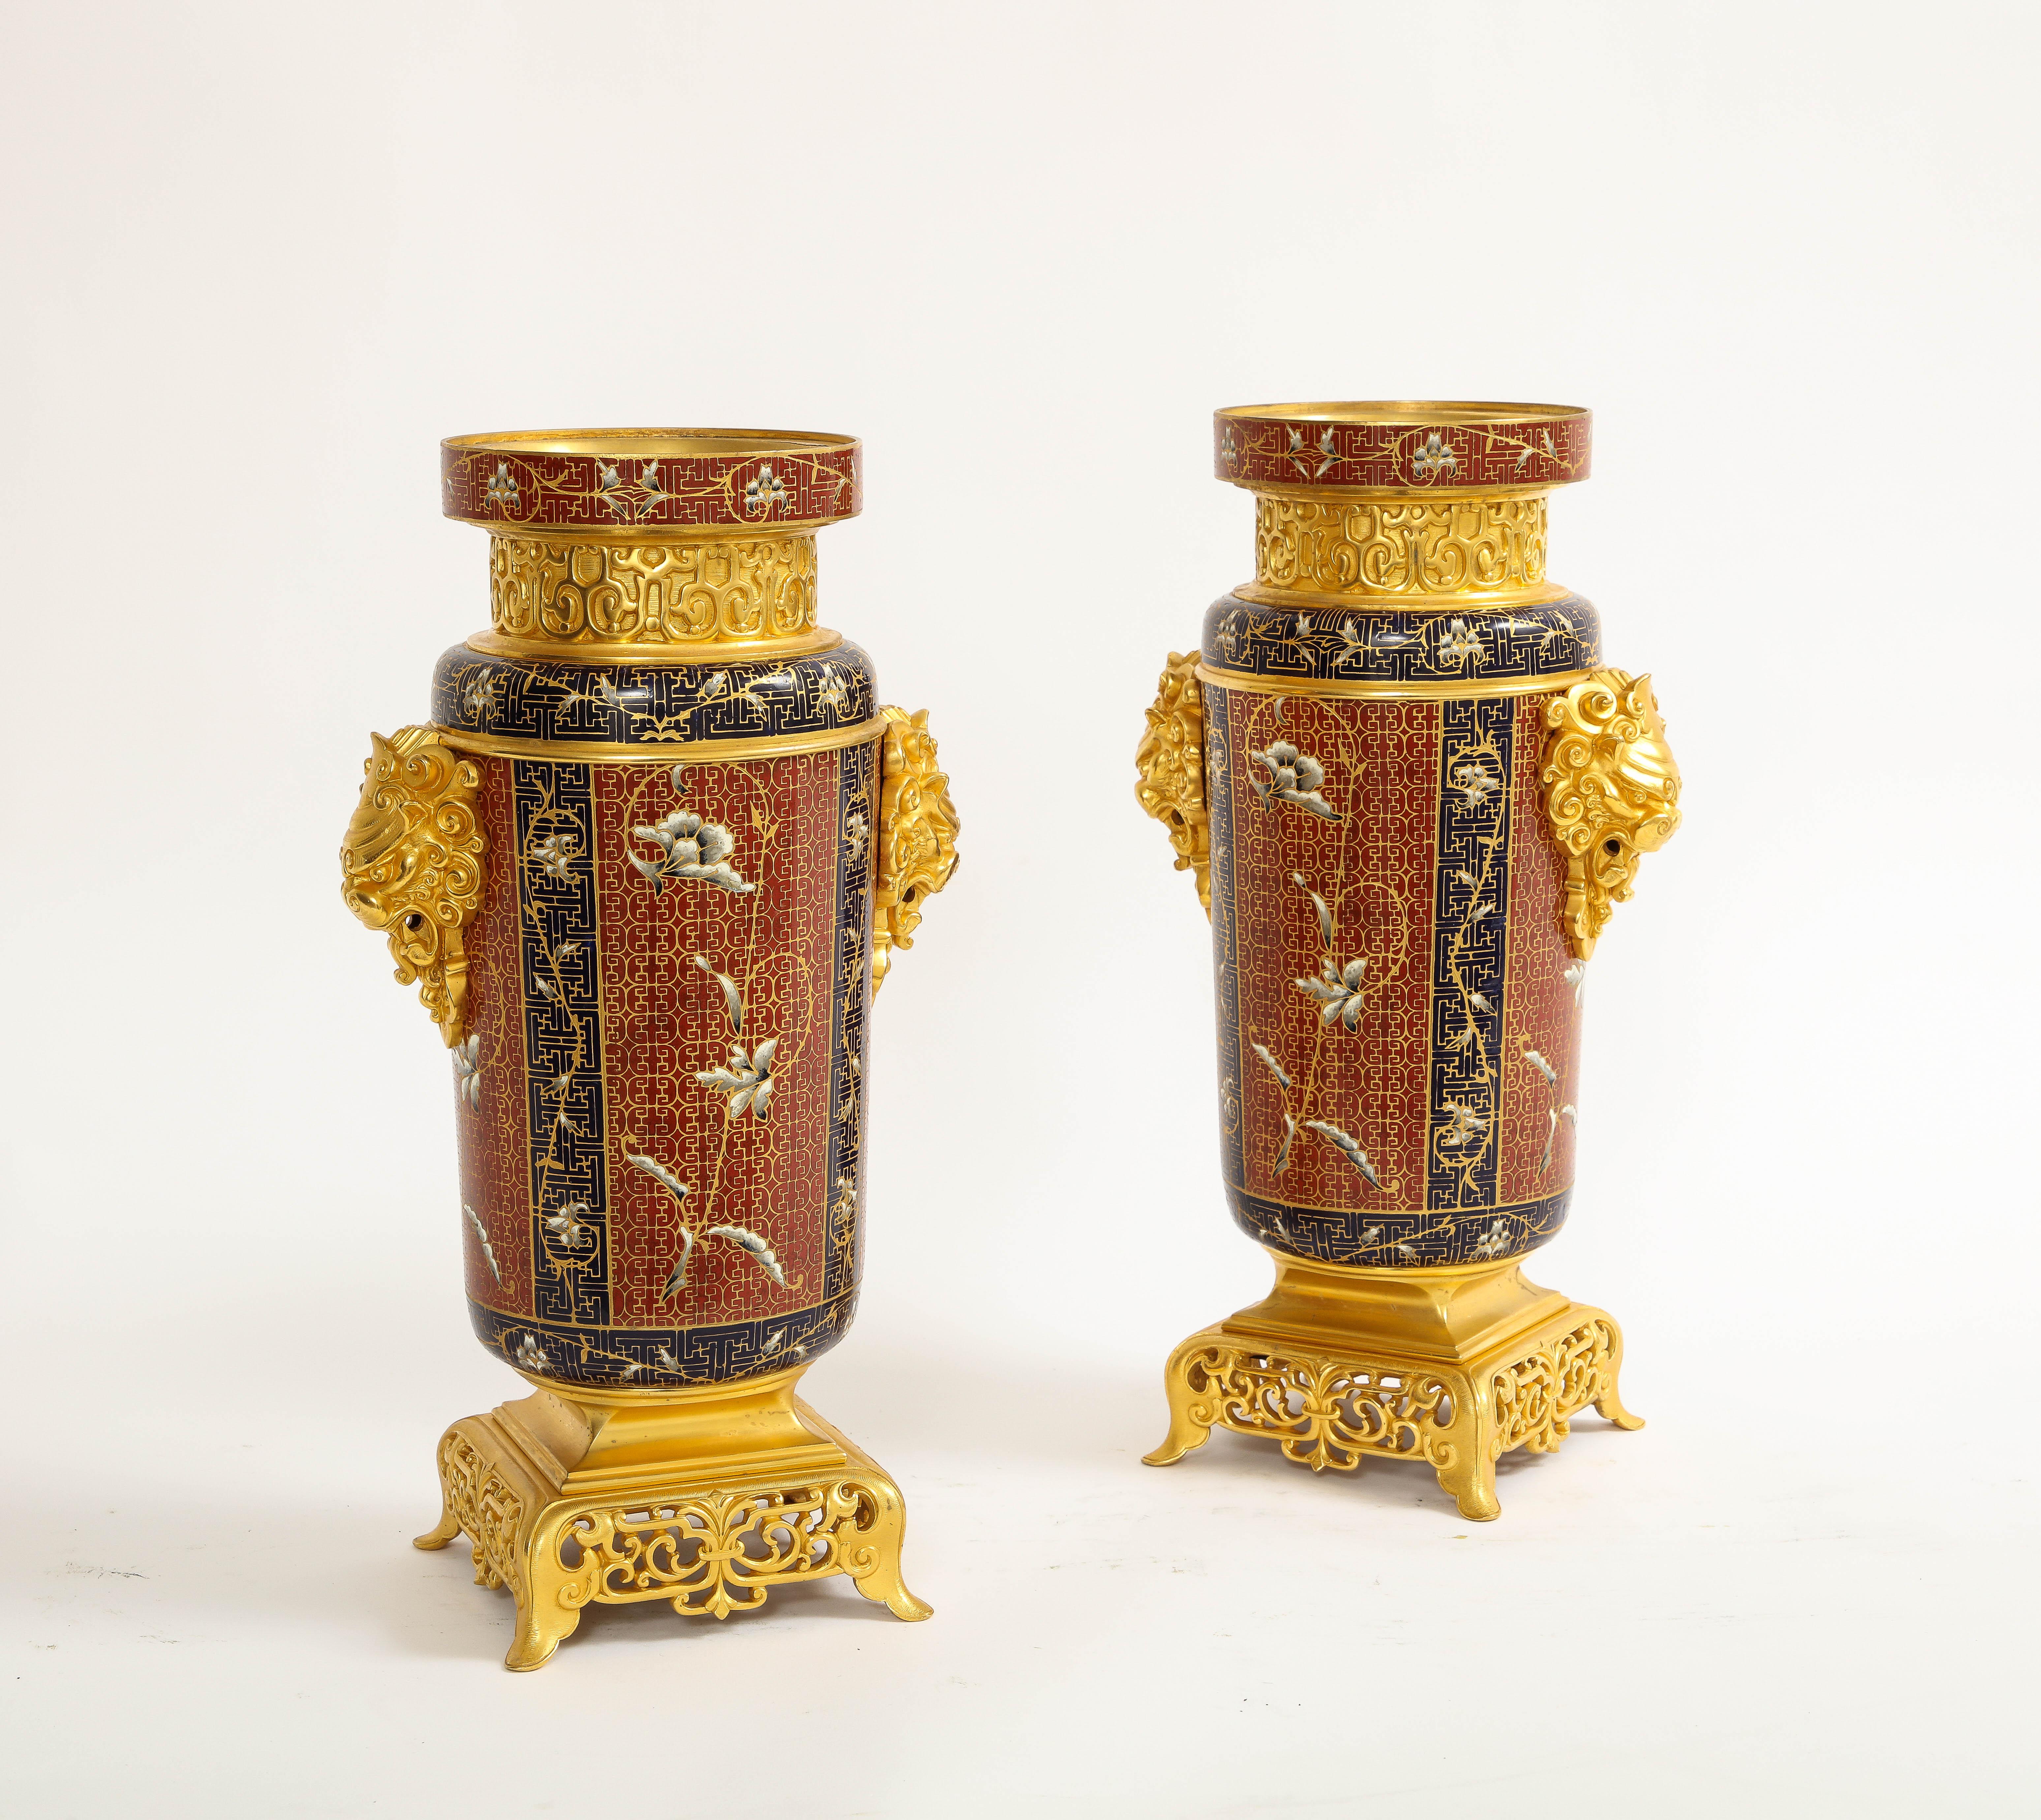 Ein feines und großes Paar französischer Ormolu- und Champlevé-Emailvasen des 19. Jahrhunderts mit orientalischen Motiven und Foo-Löwen-Griff von hervorragender Qualität und in hervorragendem Zustand, zugeschrieben F. Barbedienne.   Jede Vase ist